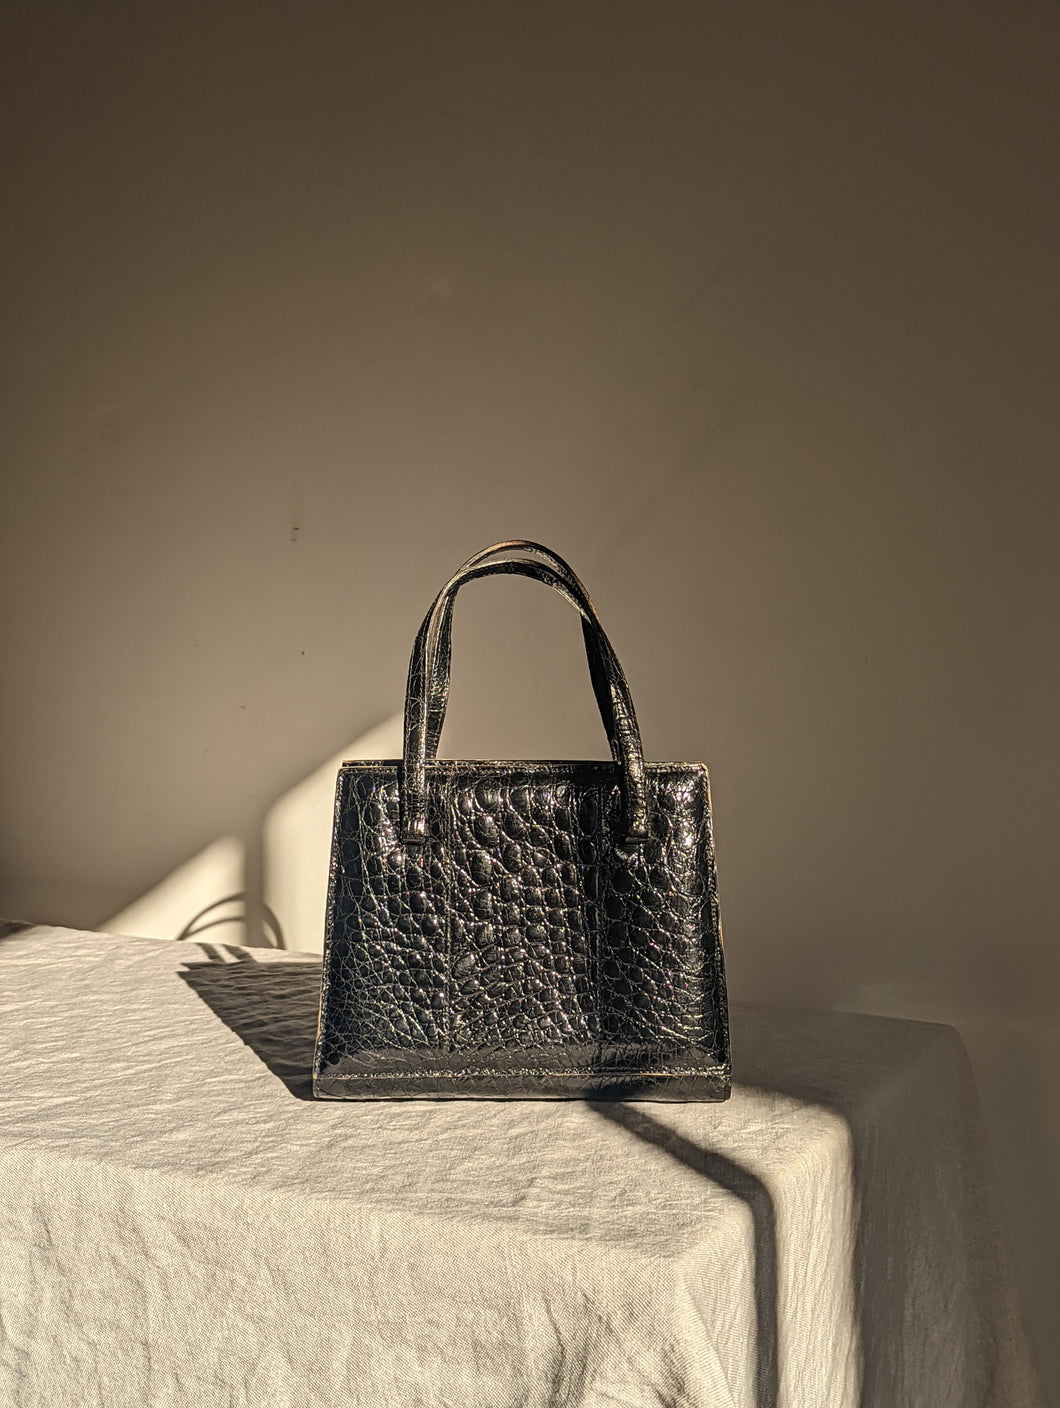 Vintage Italian black leather handbag